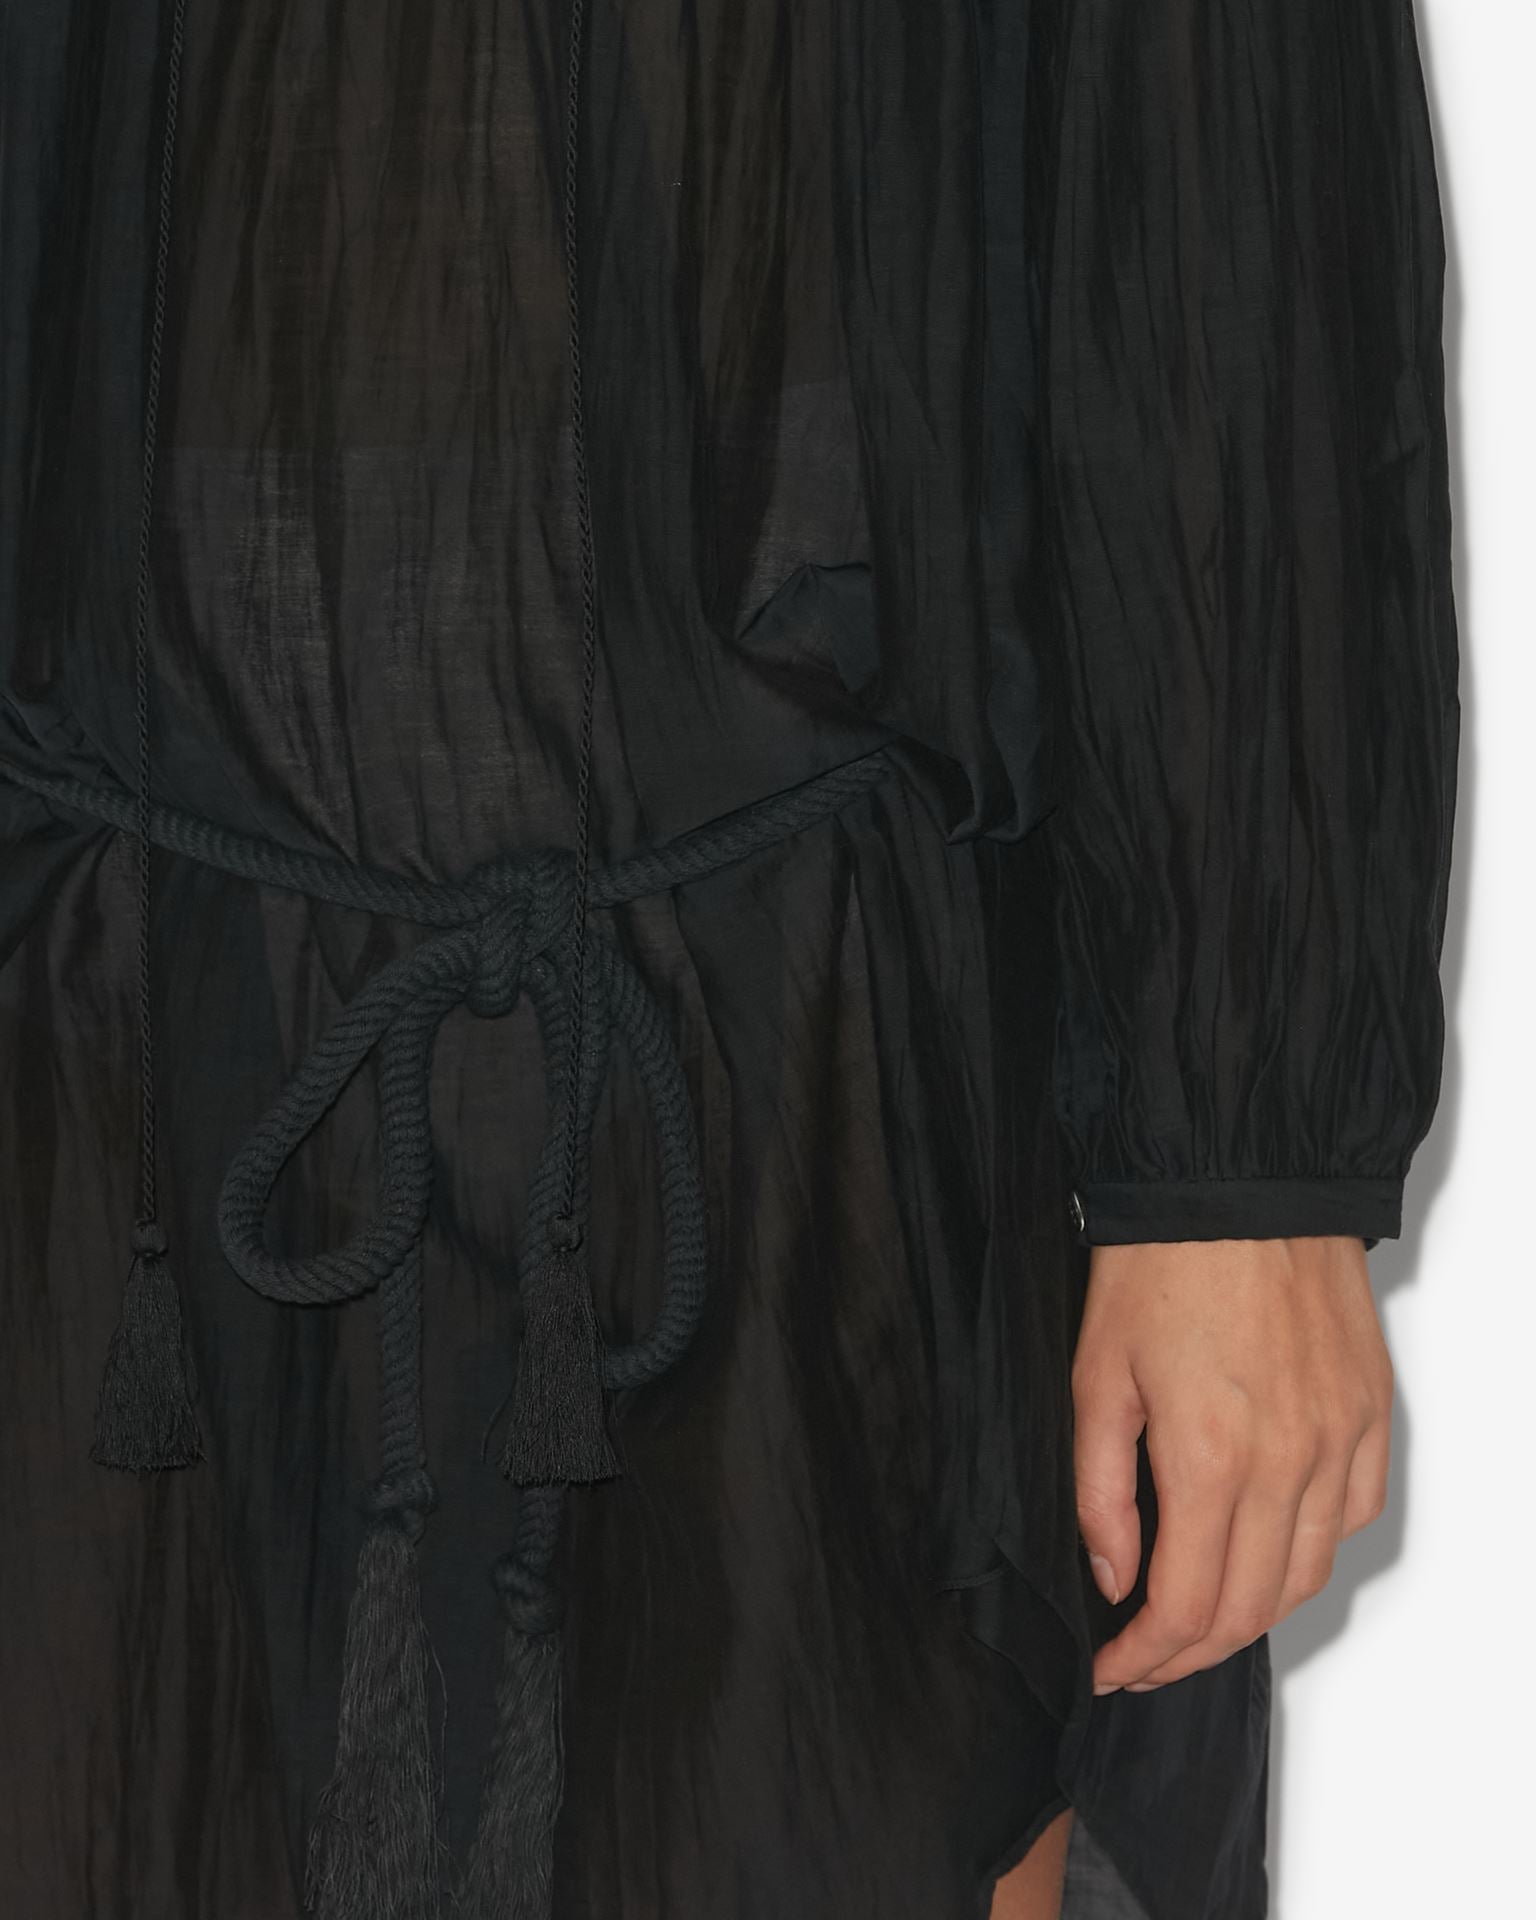 Adeliani dress, black